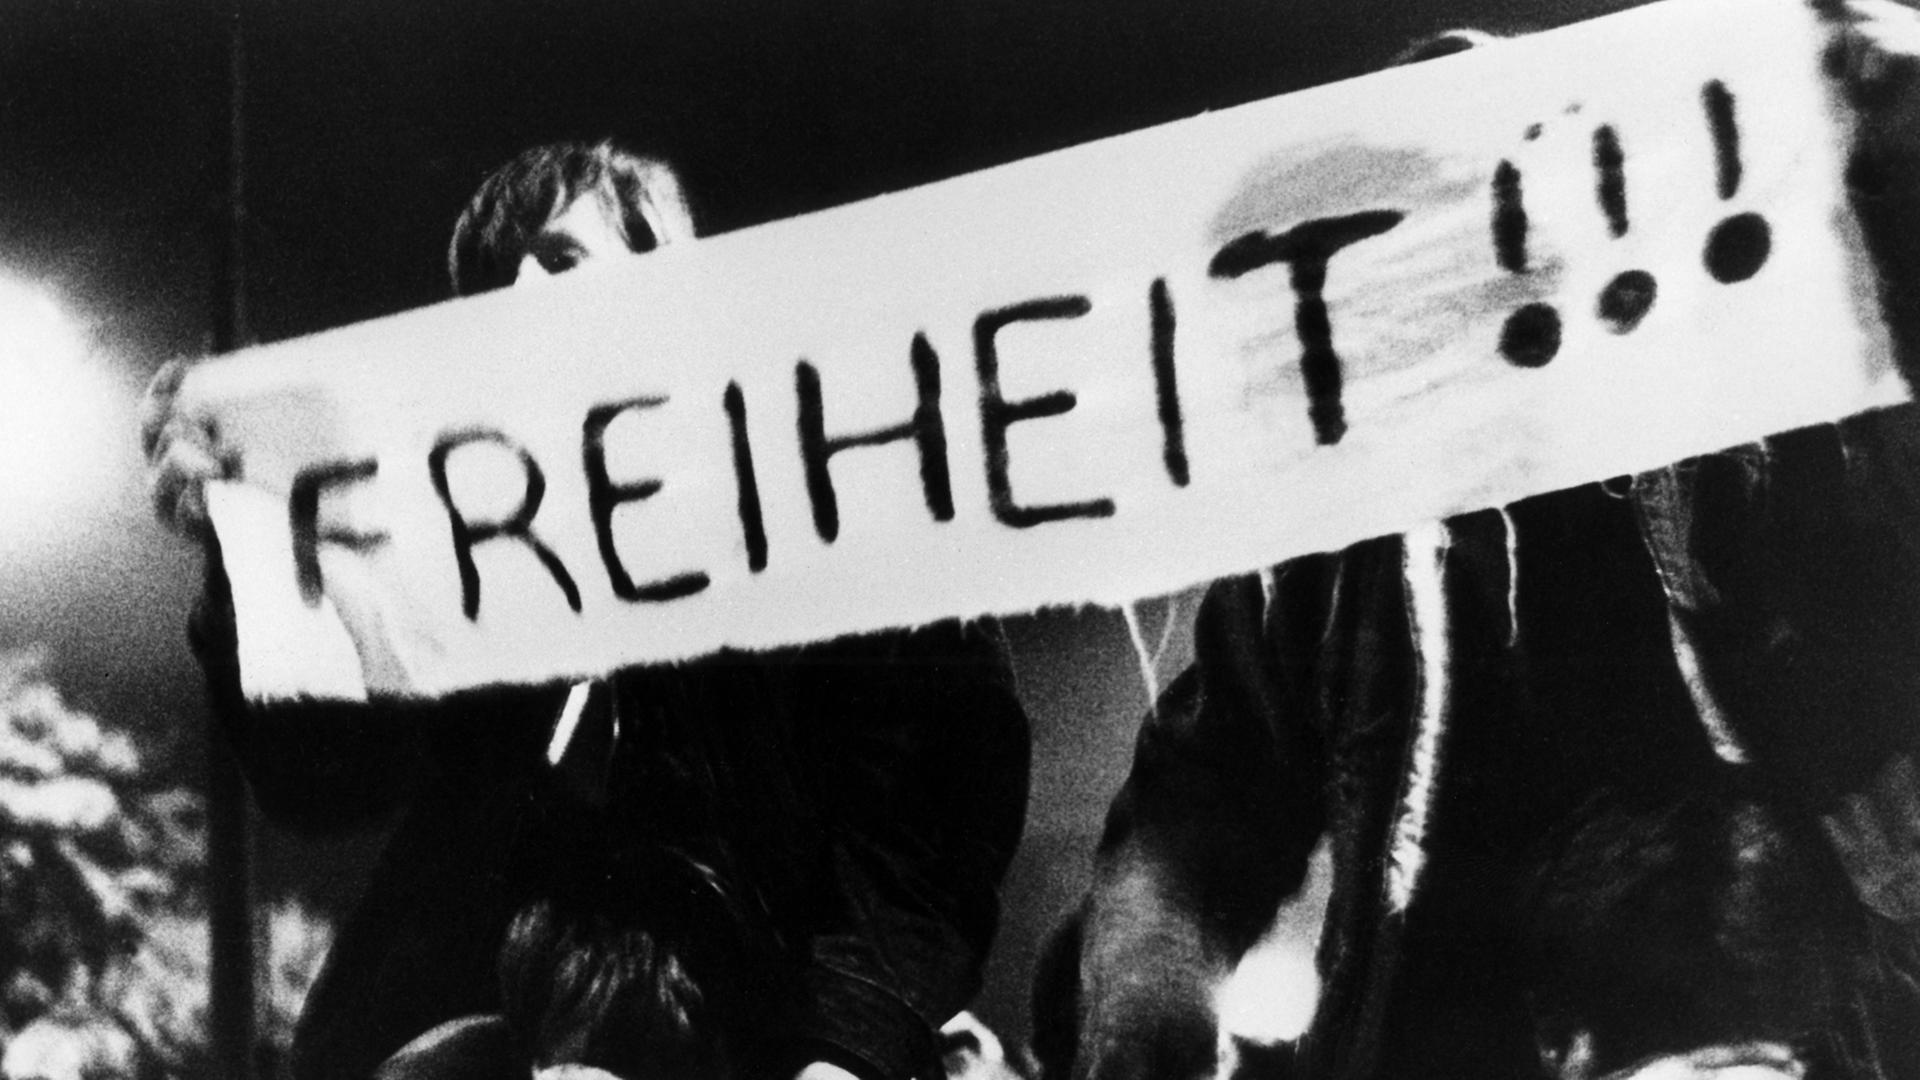 Auf Transparenten fordern Teilnehmer des friedlichen Demonstrationszuges am 10.10.1989 durch die Leipziger Innenstadt immer wieder "Freiheit" - hier auf einem Banner mit drei Ausrufungszeichen zu lesen.